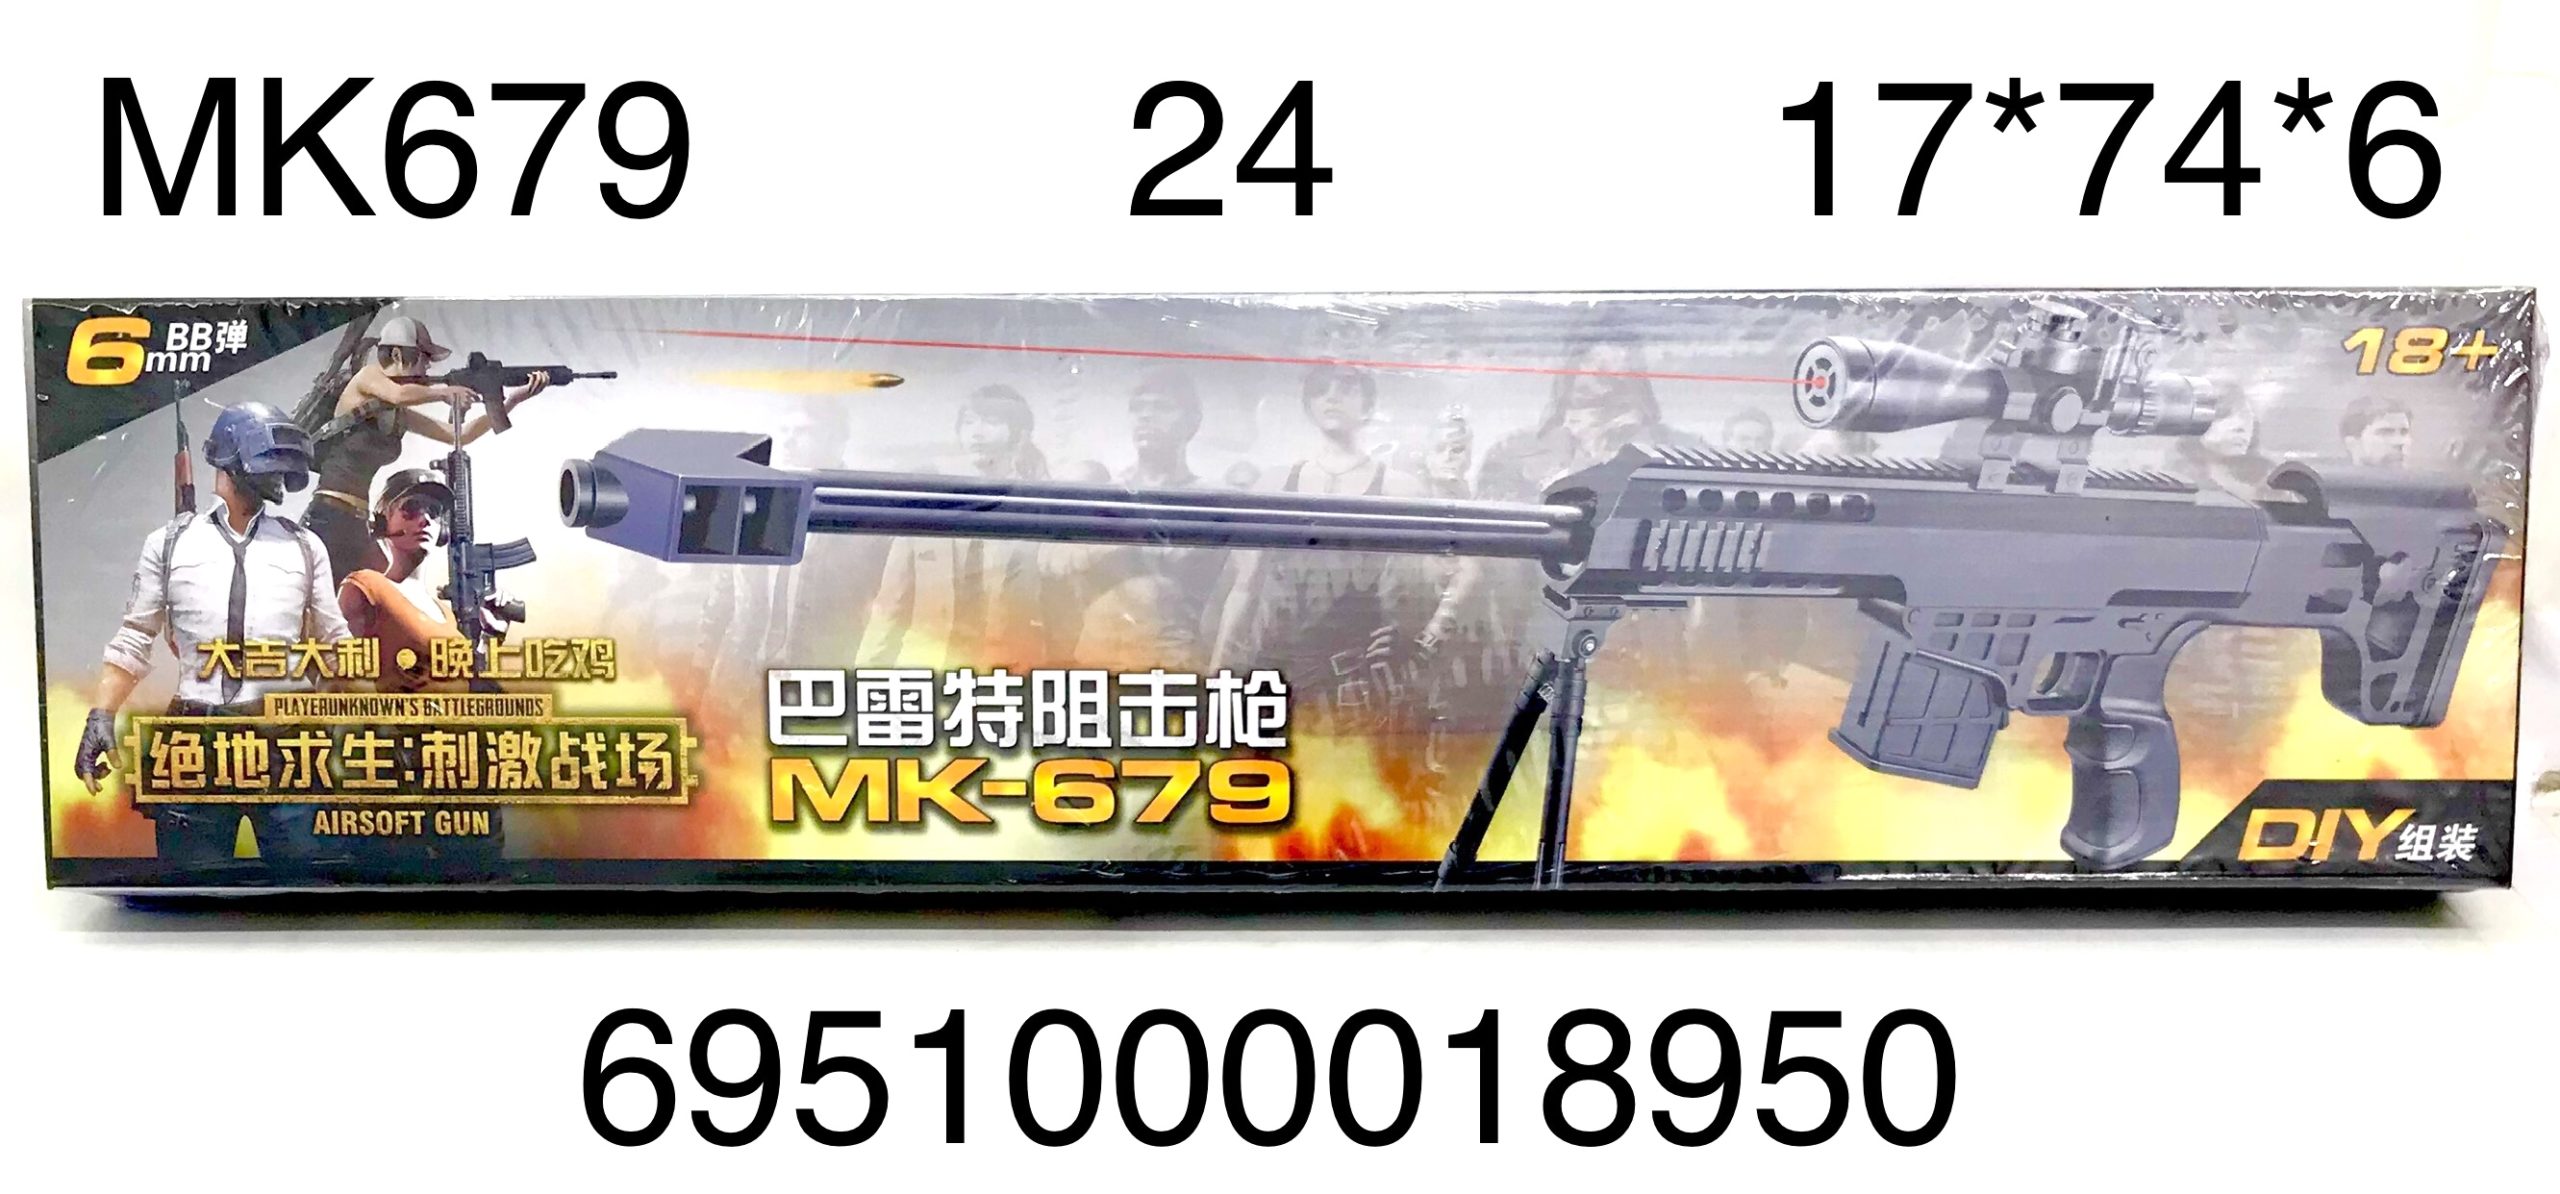 Оружие МК679 с лазерным прицелом - Пенза 